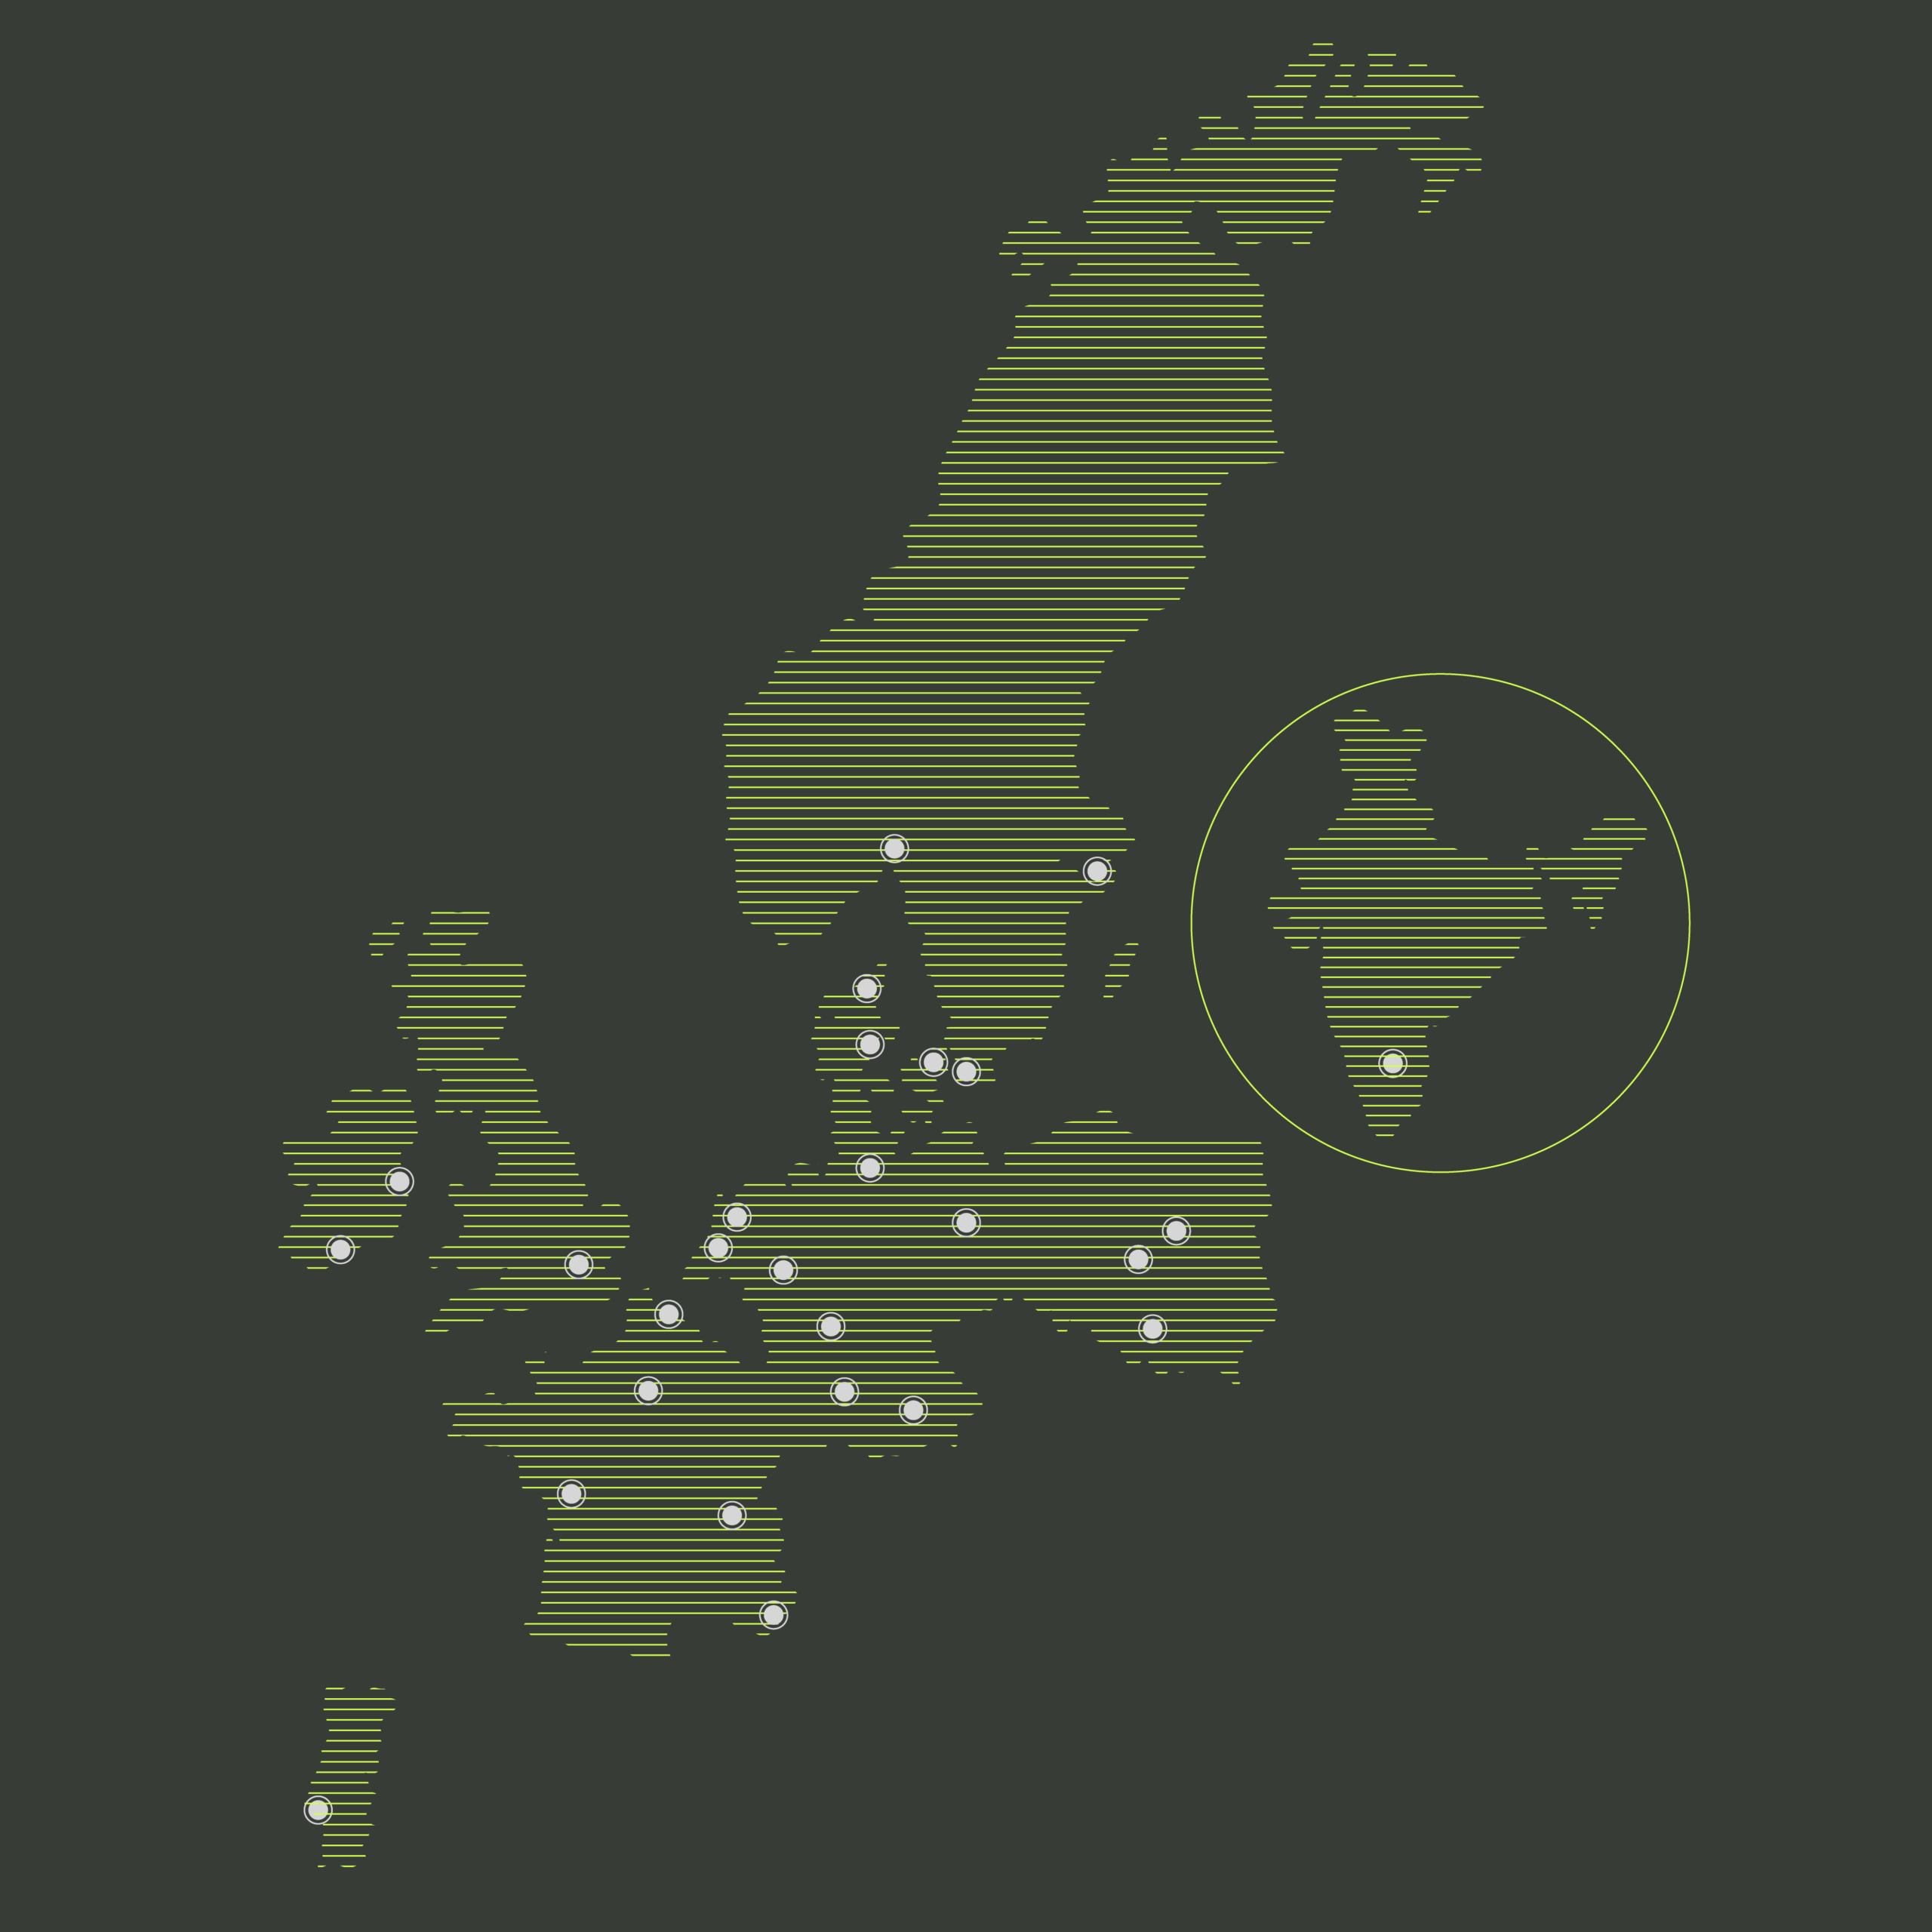 Europakart med alle emagines kontorer markert